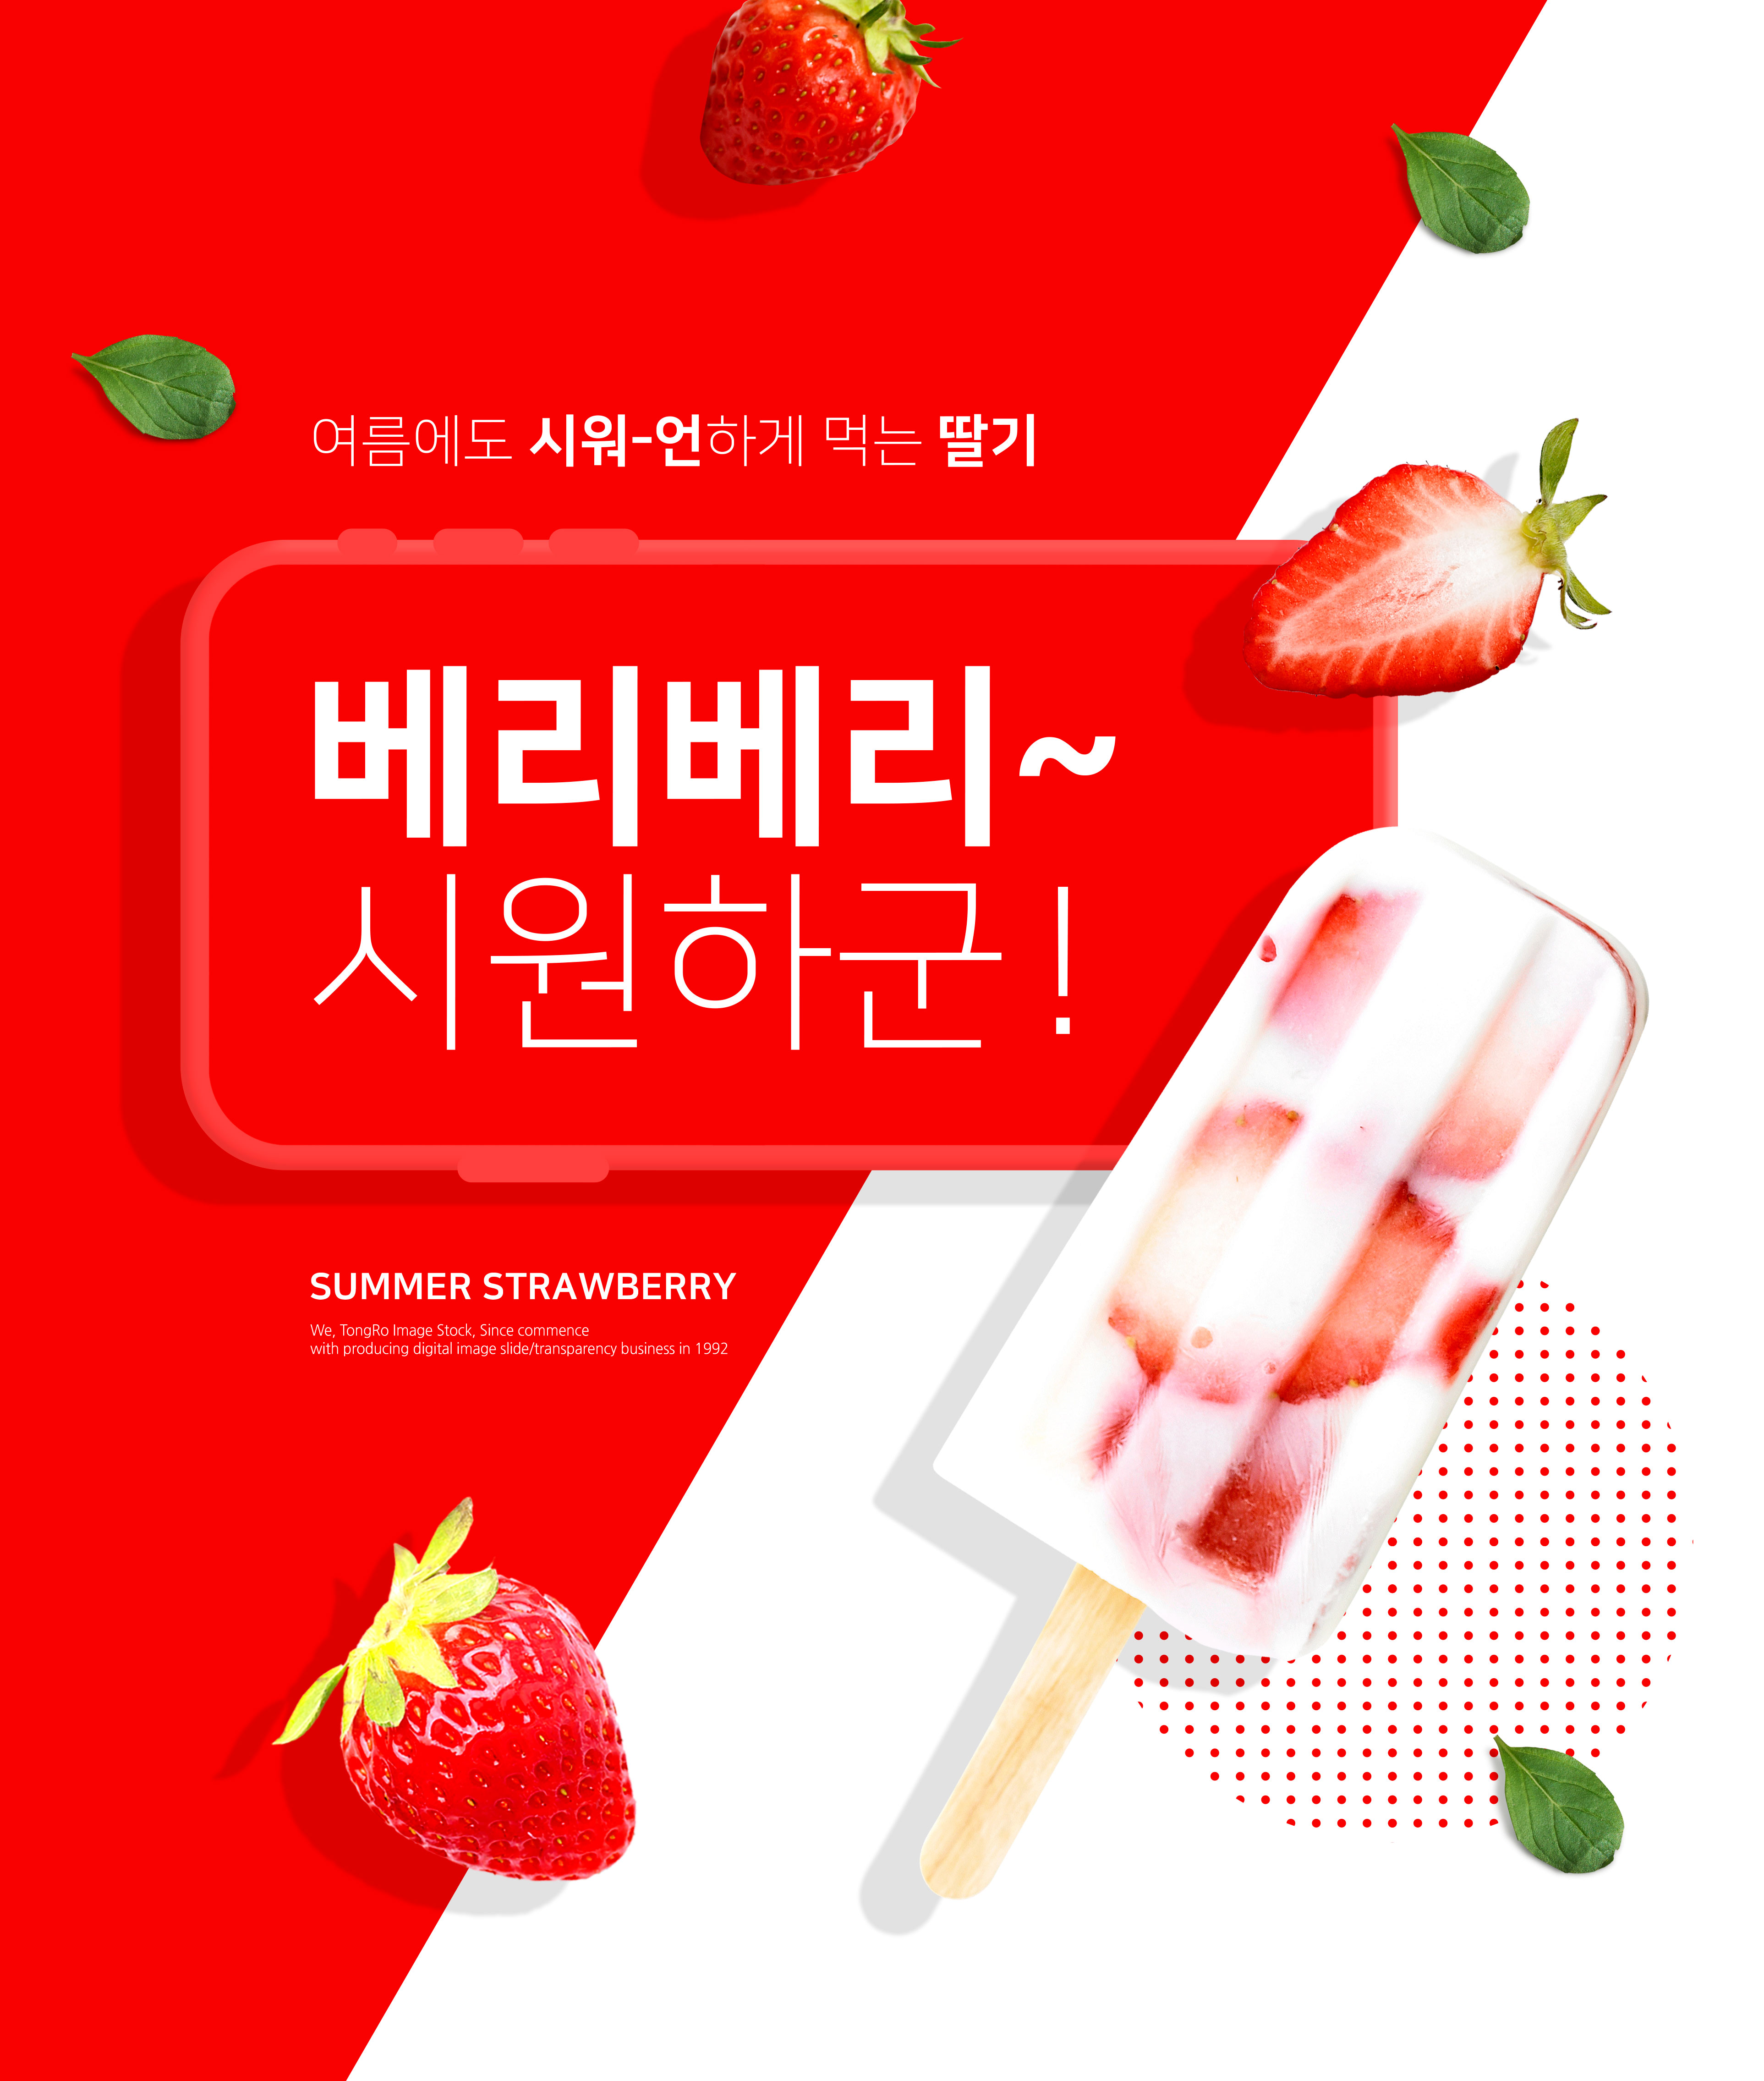 夏季主题草莓水果促销海报设计模板